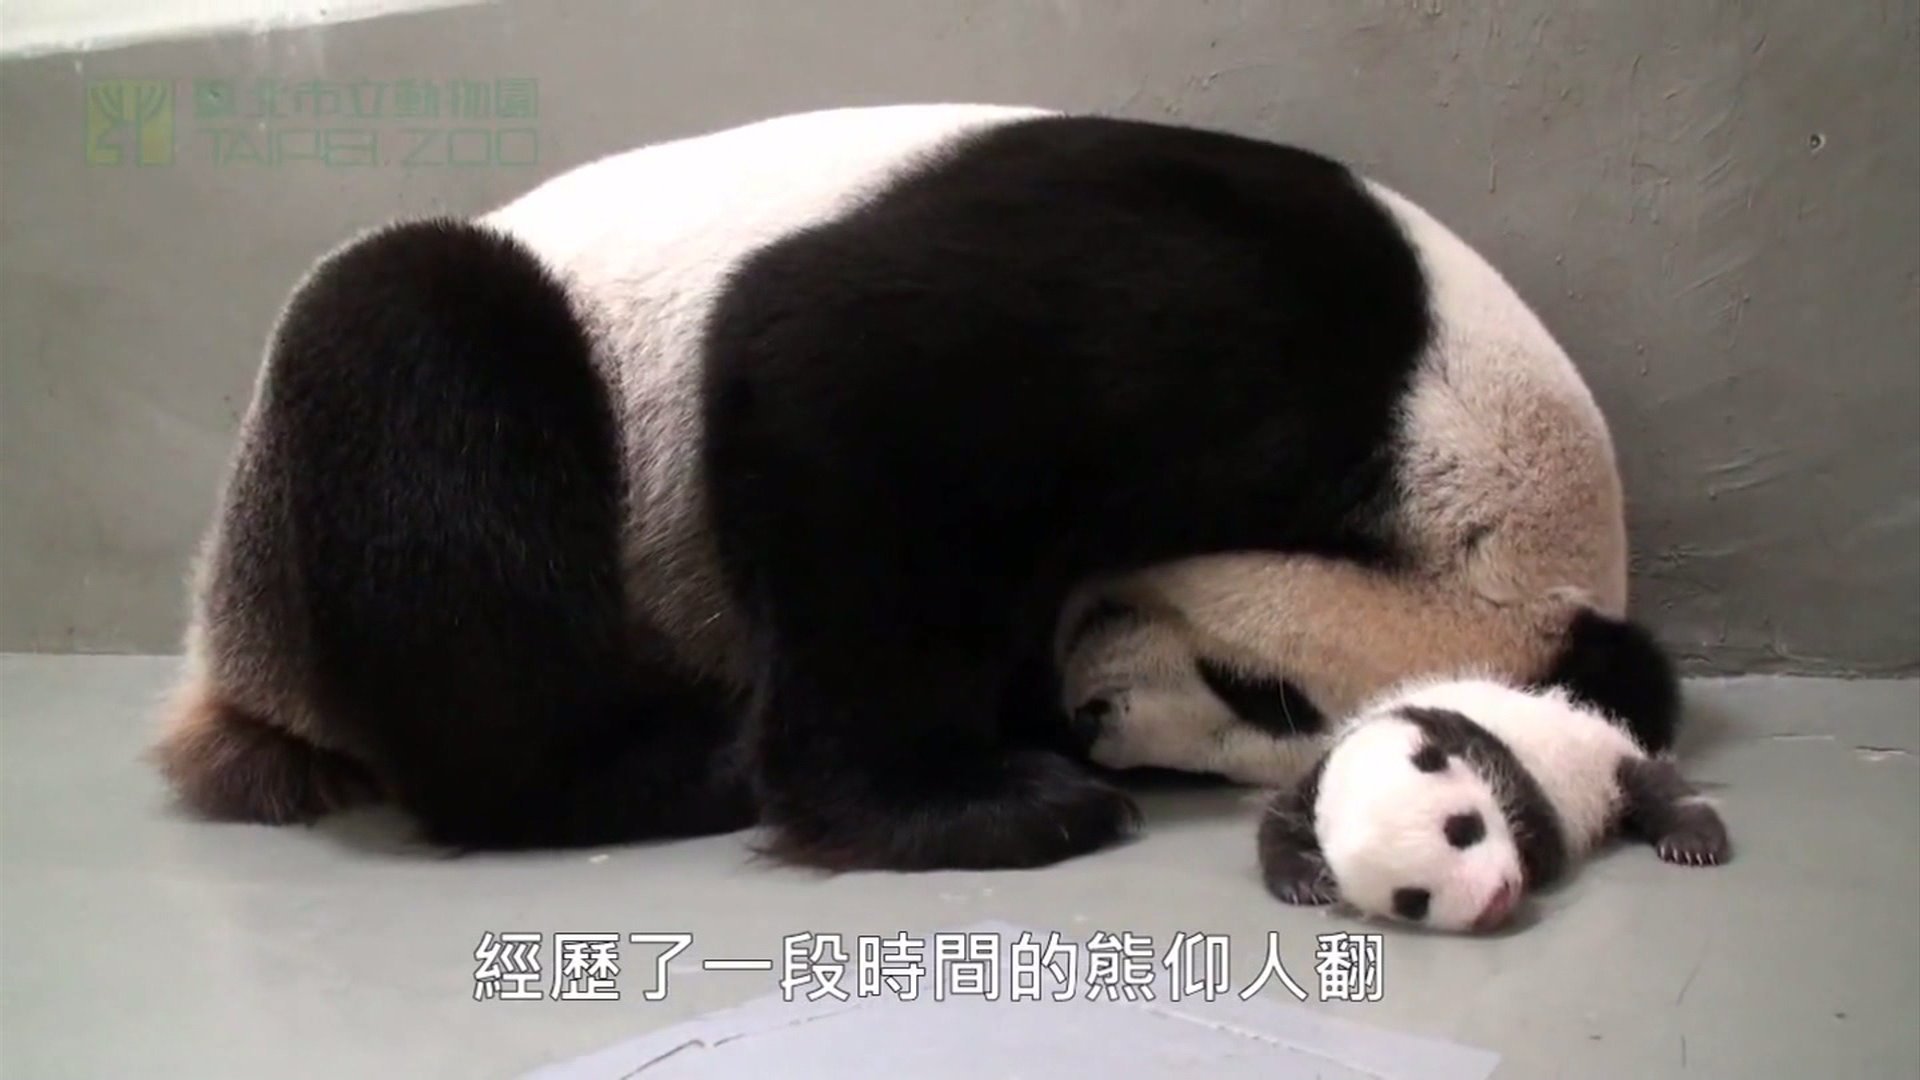 panda, Pandas, Baer, Bears, Baby, Cute,  1 Wallpaper